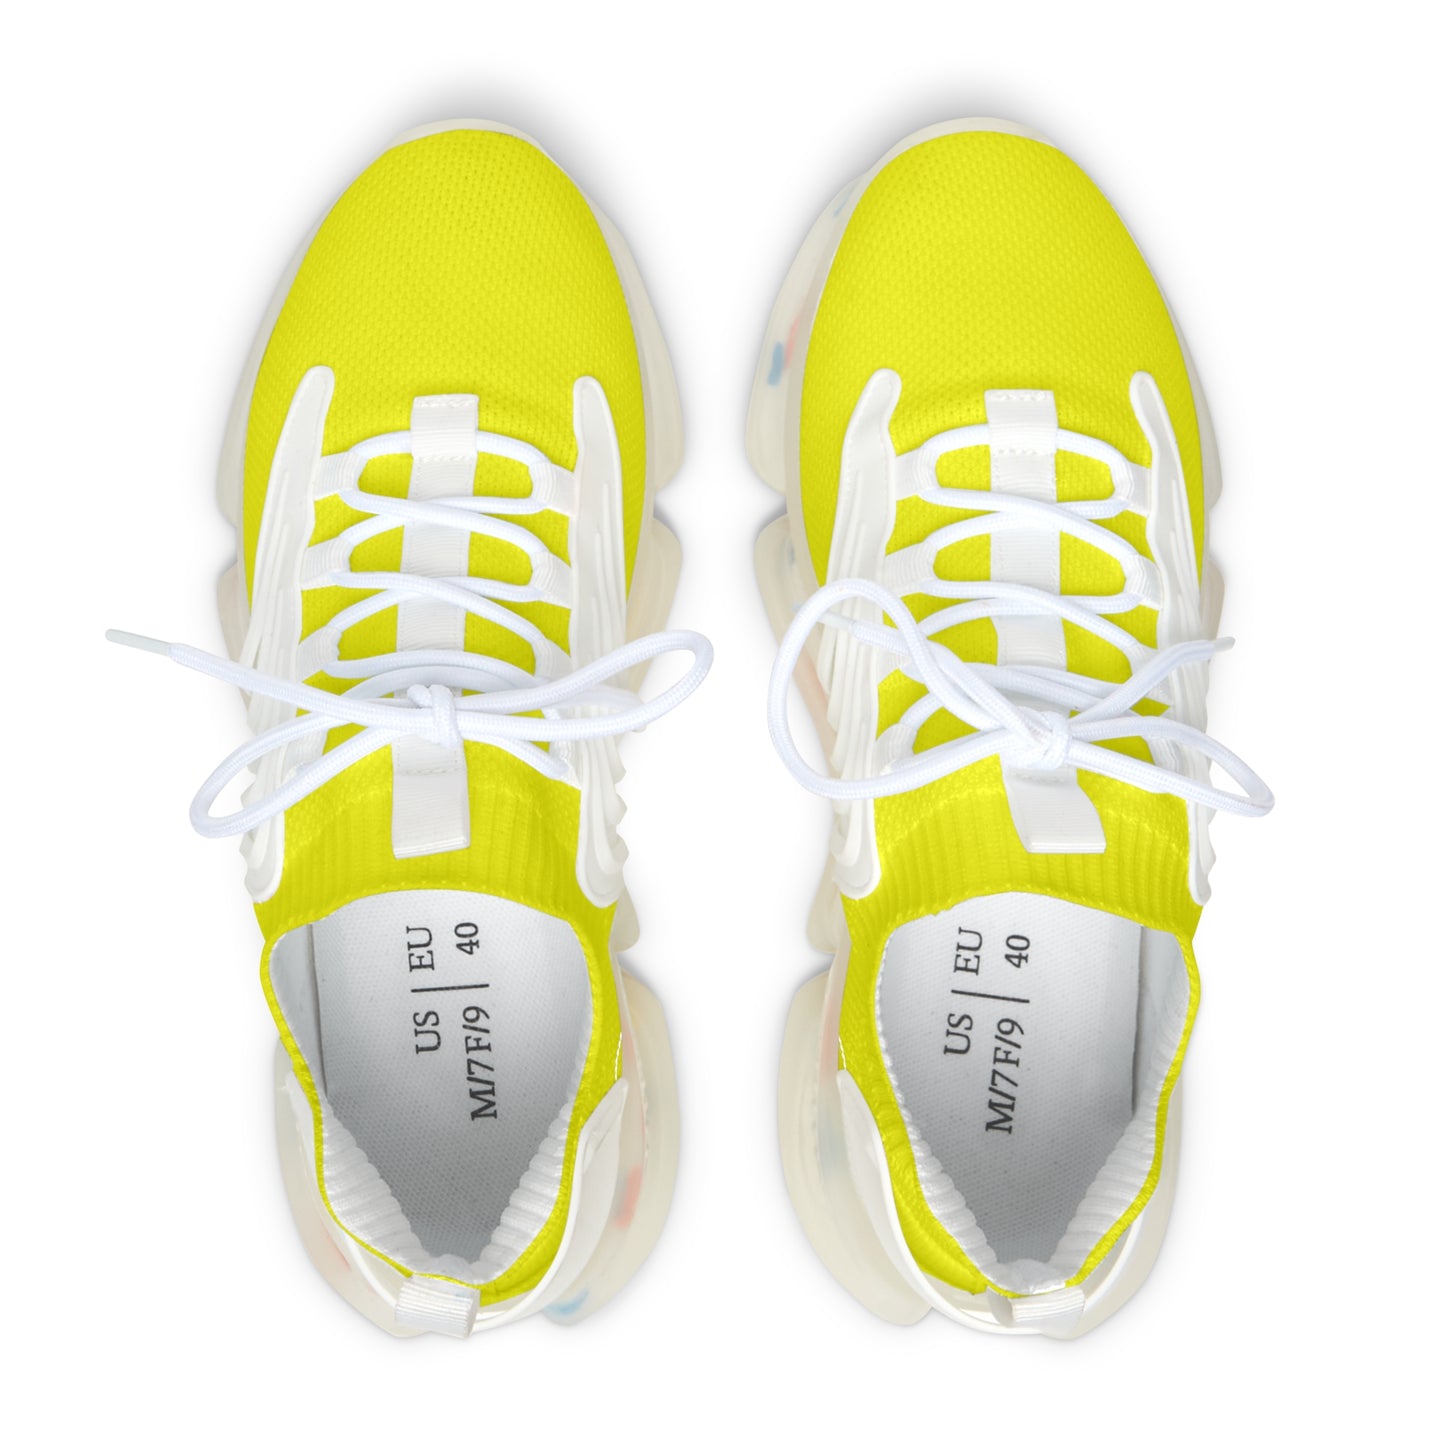 Snooty Fox Art Women's Mesh Sneakers - Neon Yellow